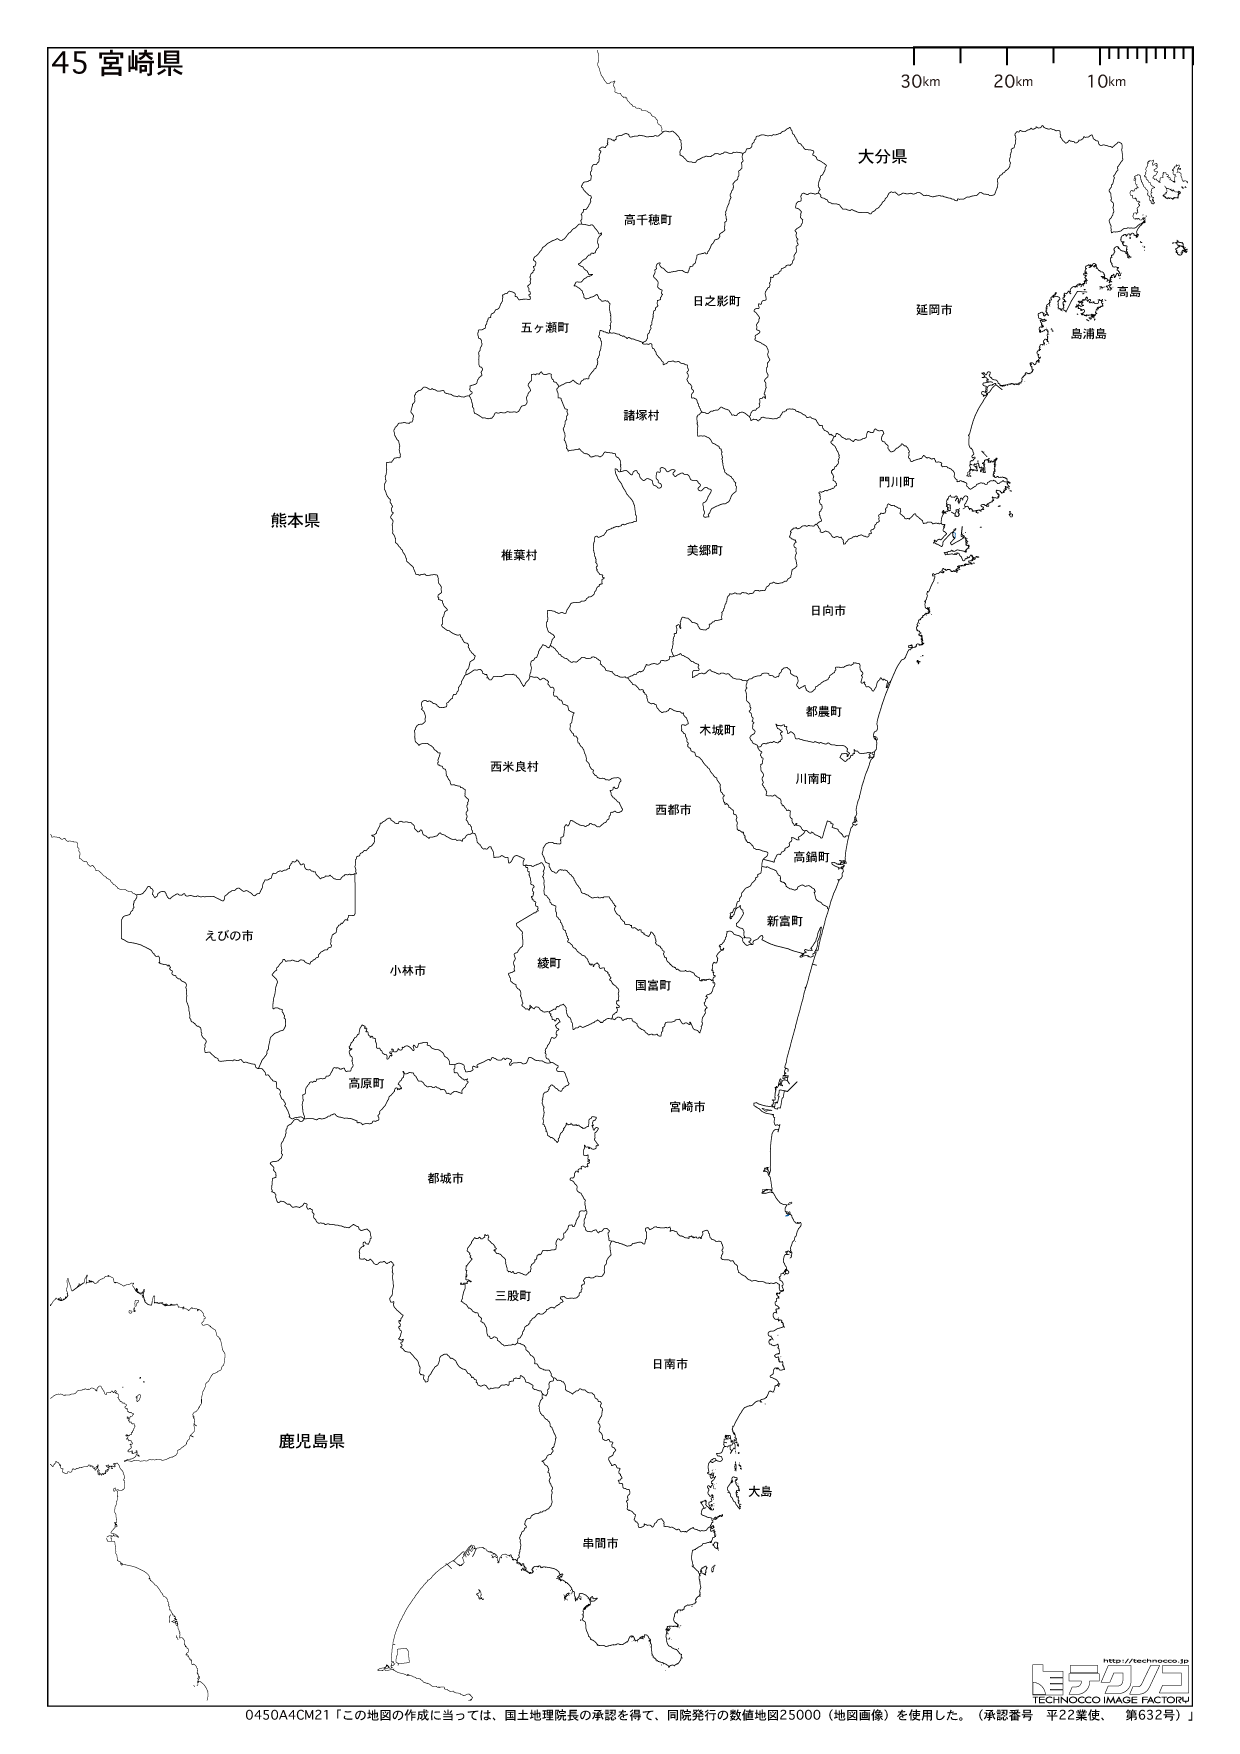 宮崎県の白地図と市町村の合併情報